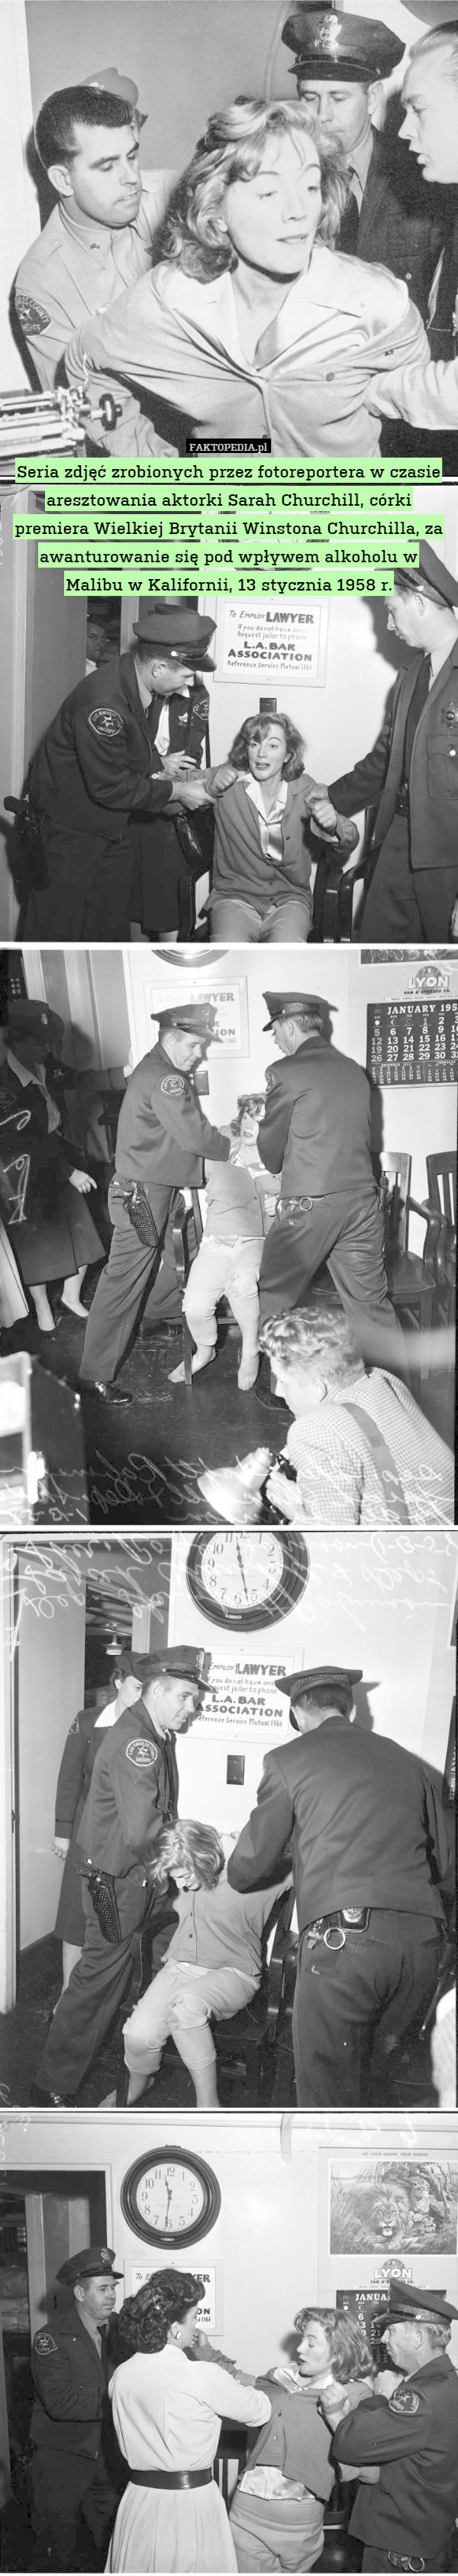 Seria zdjęć zrobionych przez fotoreportera w czasie aresztowania aktorki Sarah Churchill, córki premiera Wielkiej Brytanii Winstona Churchilla, za awanturowanie się pod wpływem alkoholu w Malibu w Kalifornii, 13 stycznia 1958 r. 